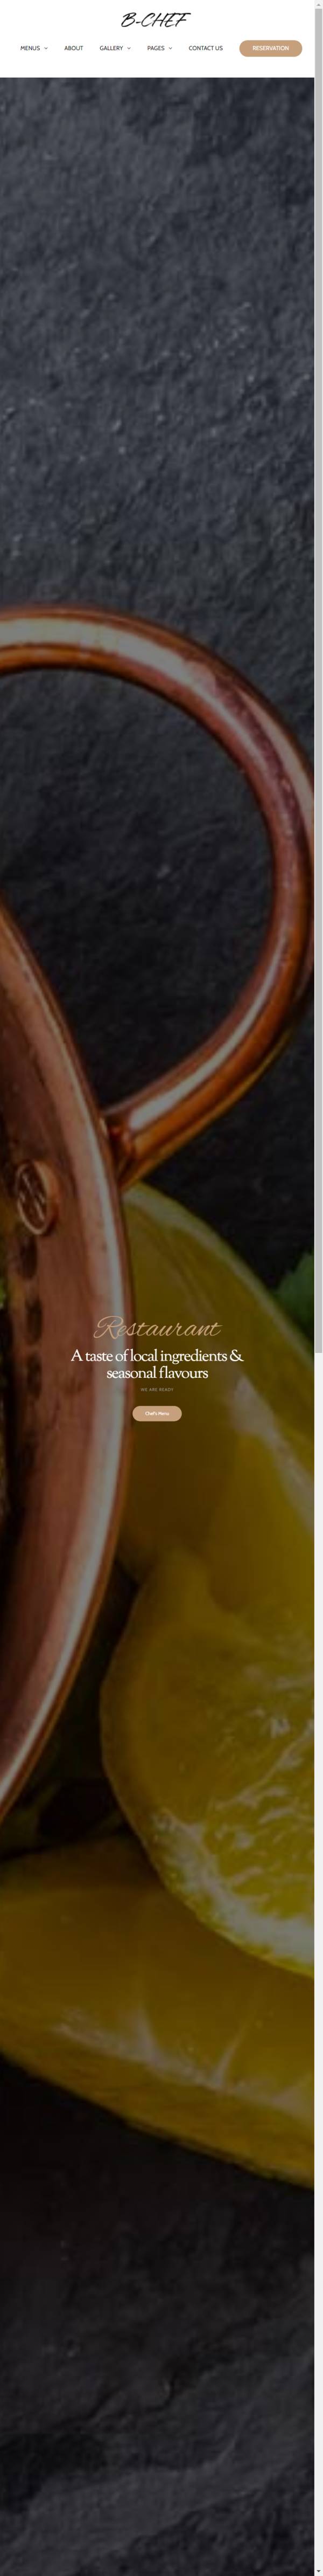 西餐厅美食图片展示HTML模板